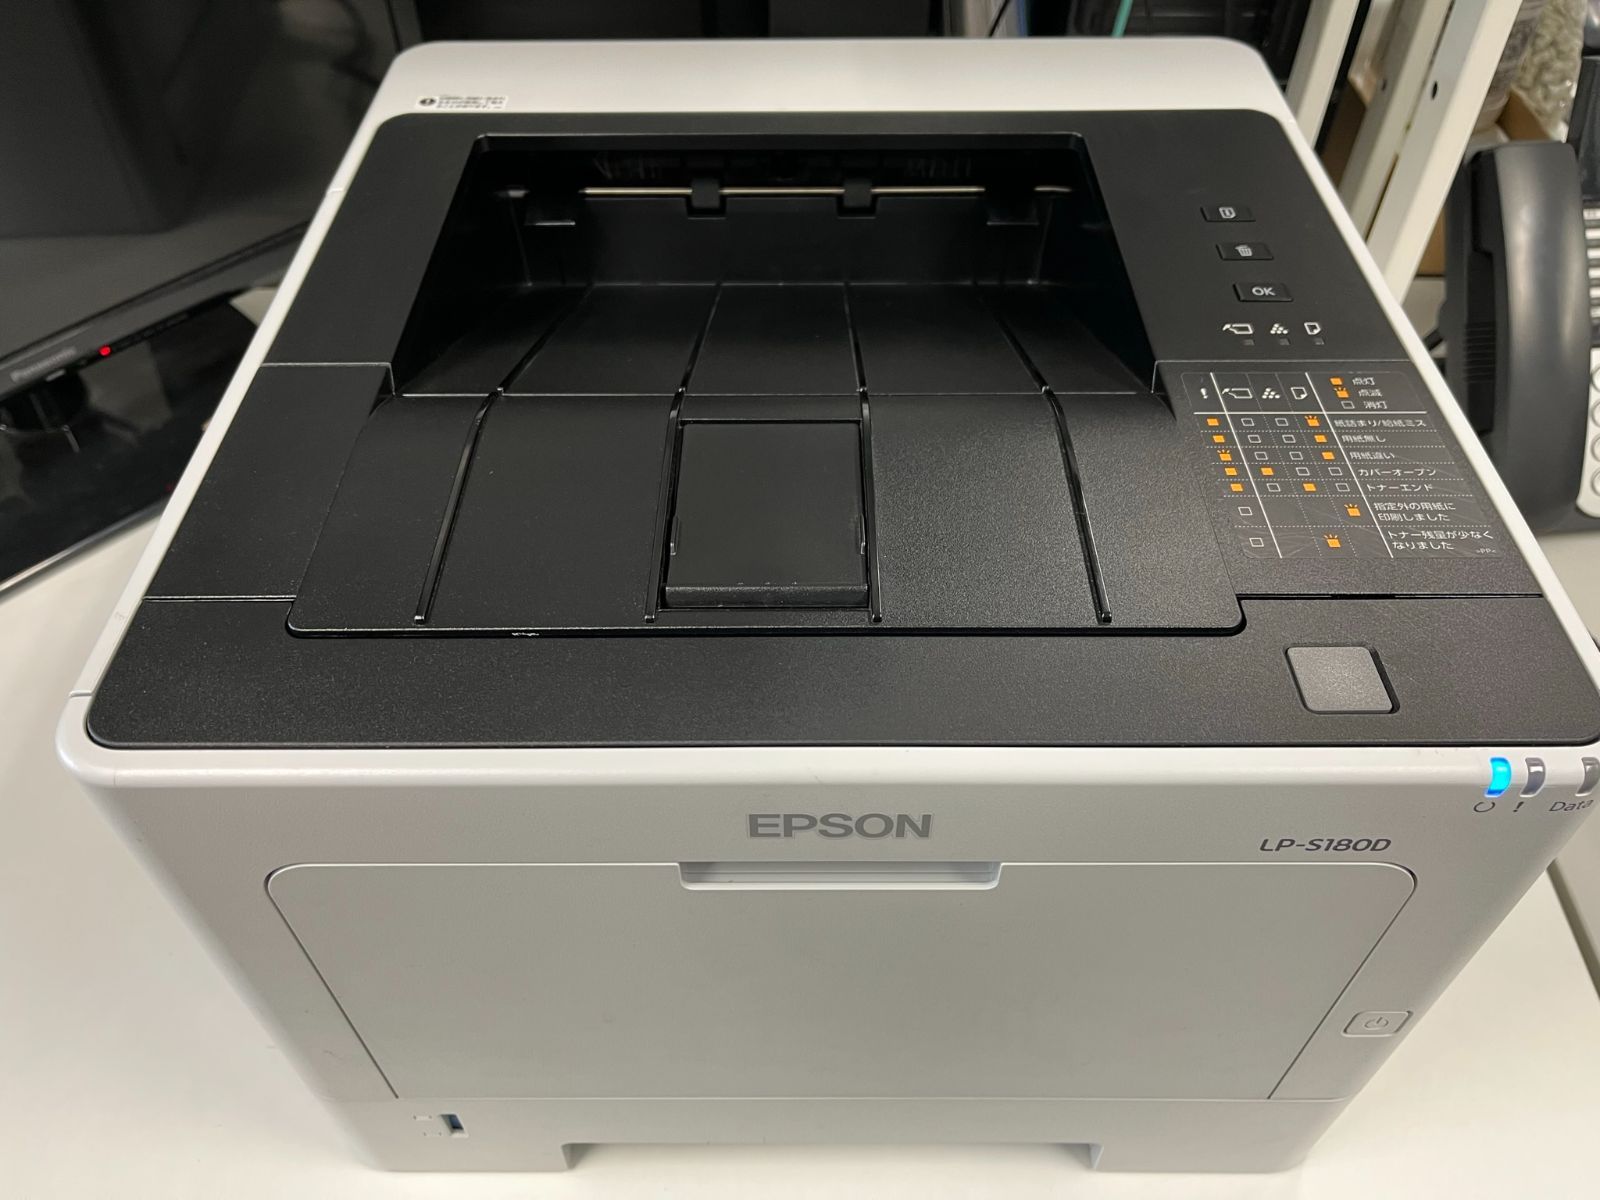 エプソン LP-S180D A4モノクロページプリンター - レーザープリンター